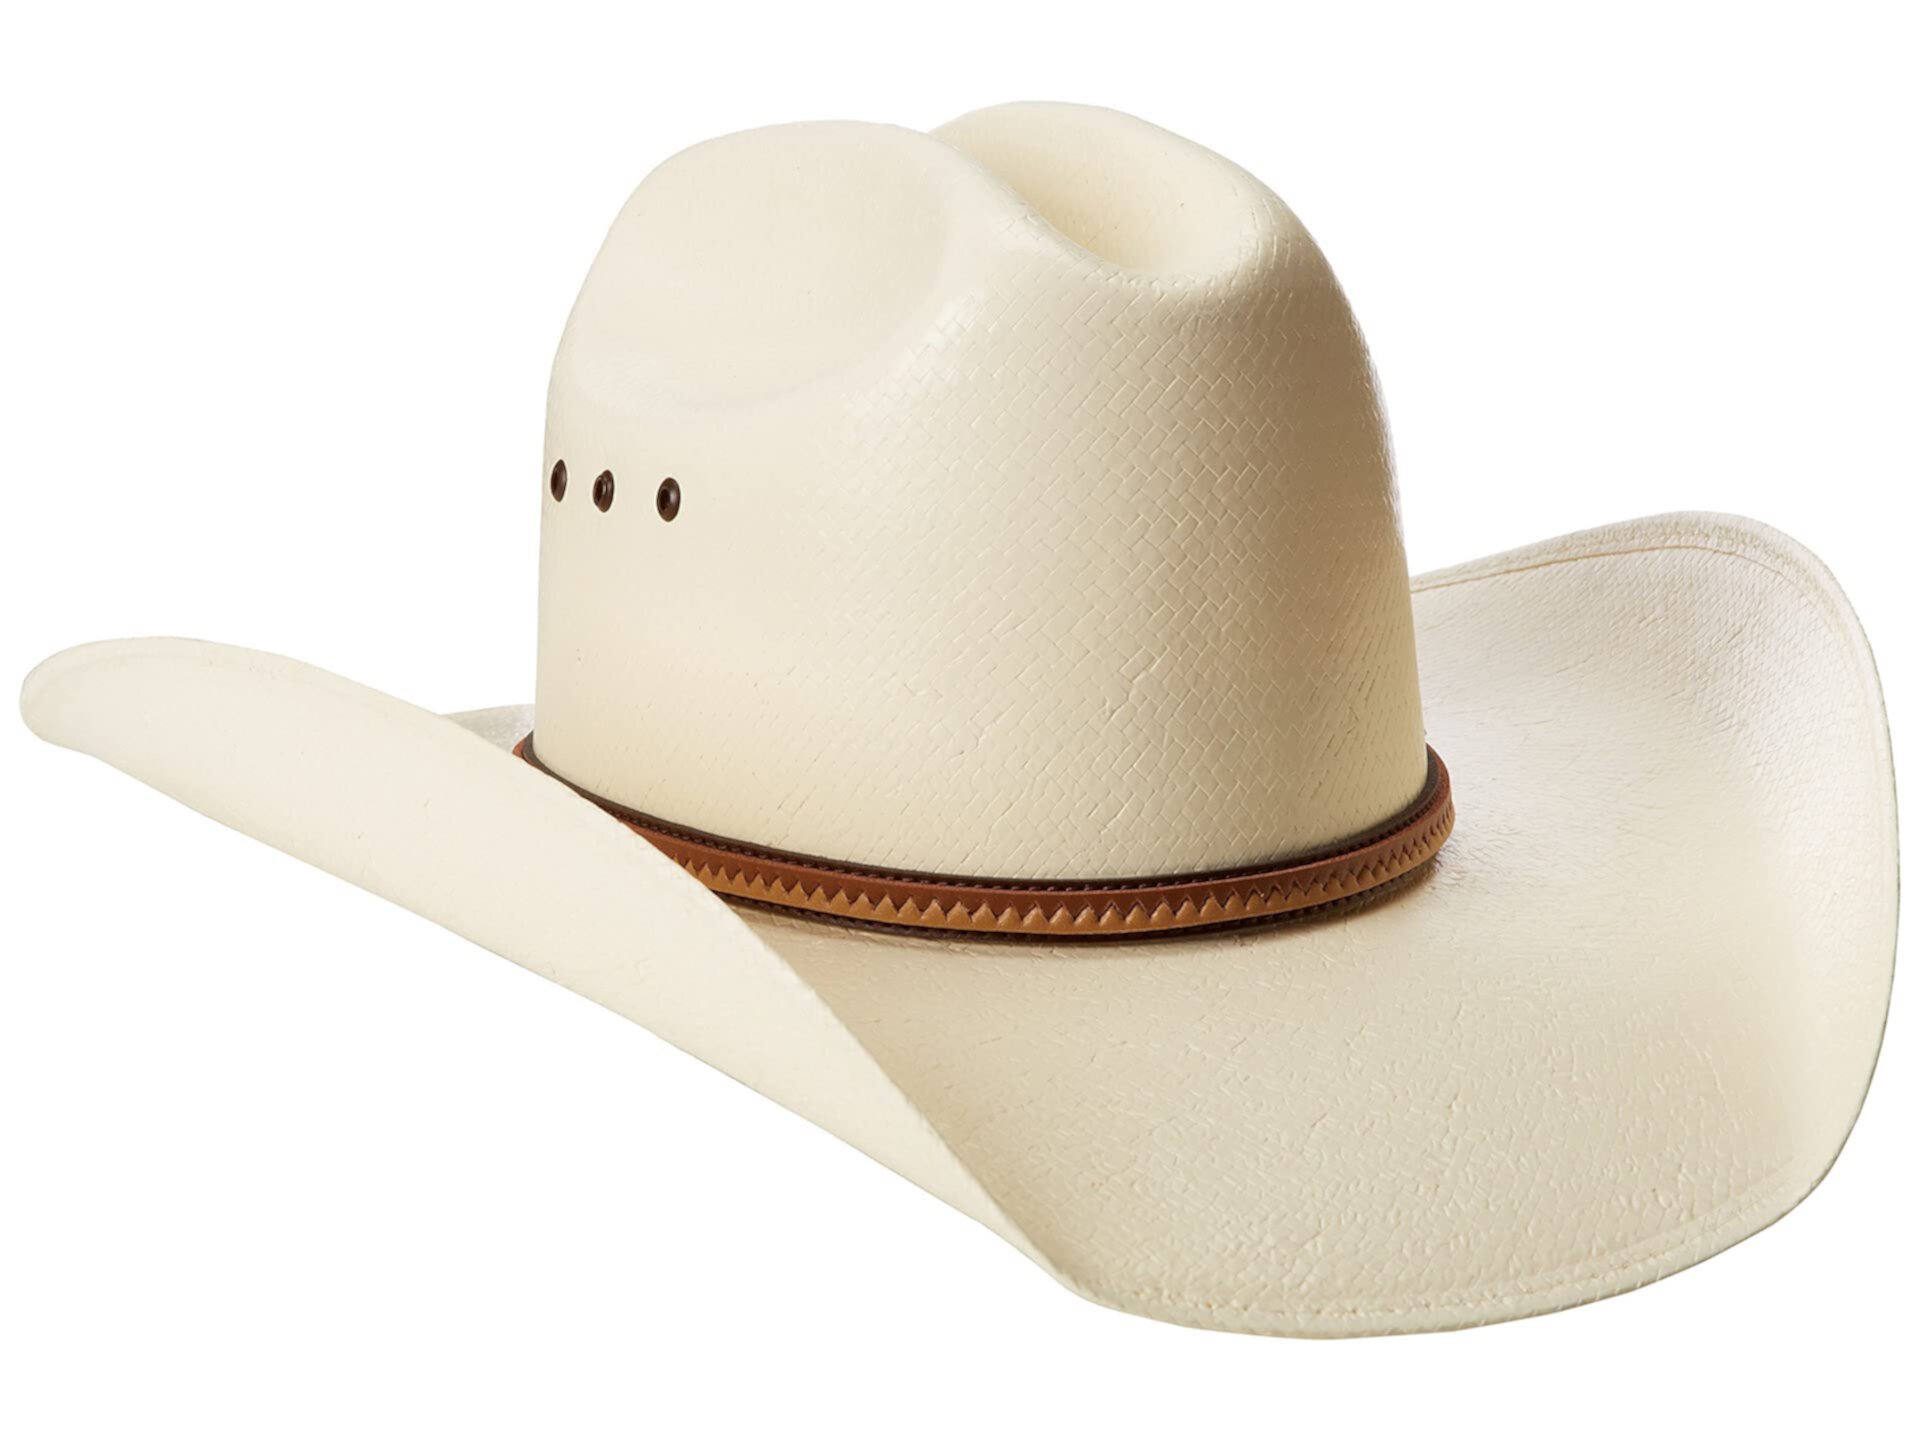 Каска в форме шляпы. Каска защитная ковбойская шляпа. Шляпы Justin. Каска в виде ковбойской шляпы.